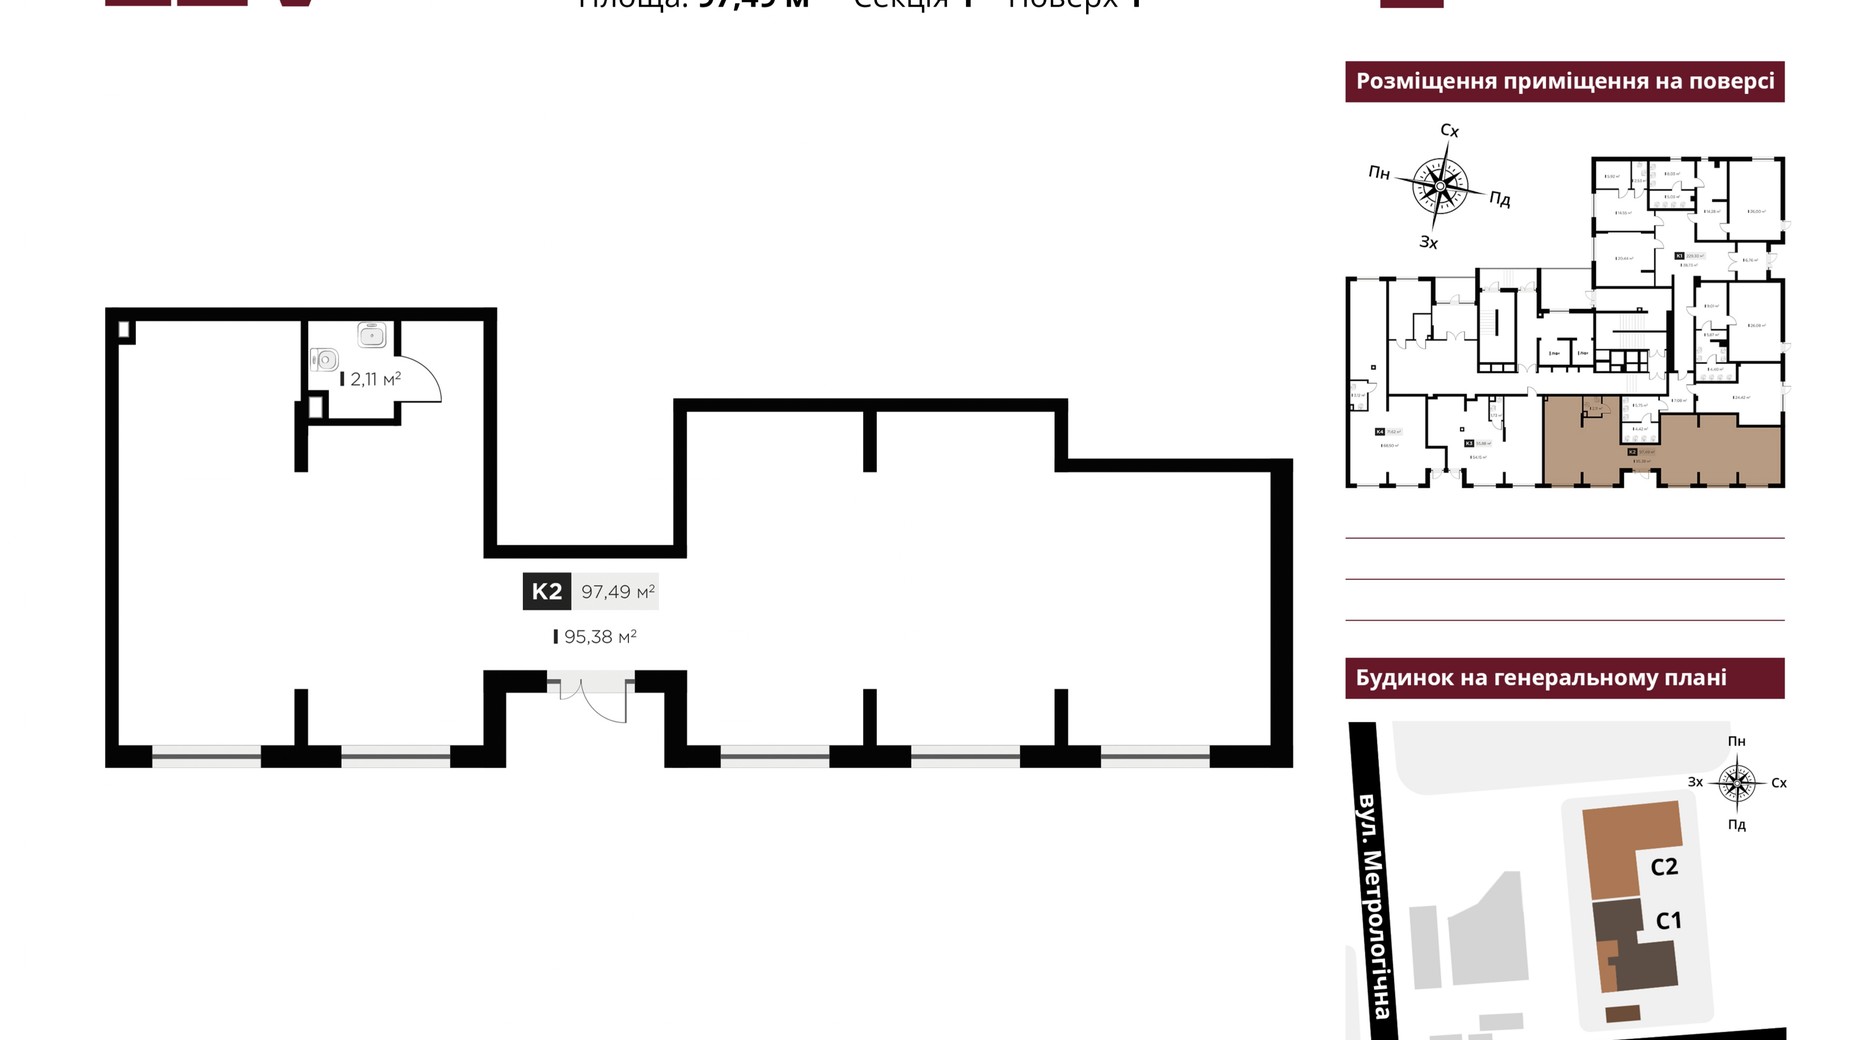 Планировка 1-комнатной квартиры в ЖК Life Story 97.49 м², фото 559036